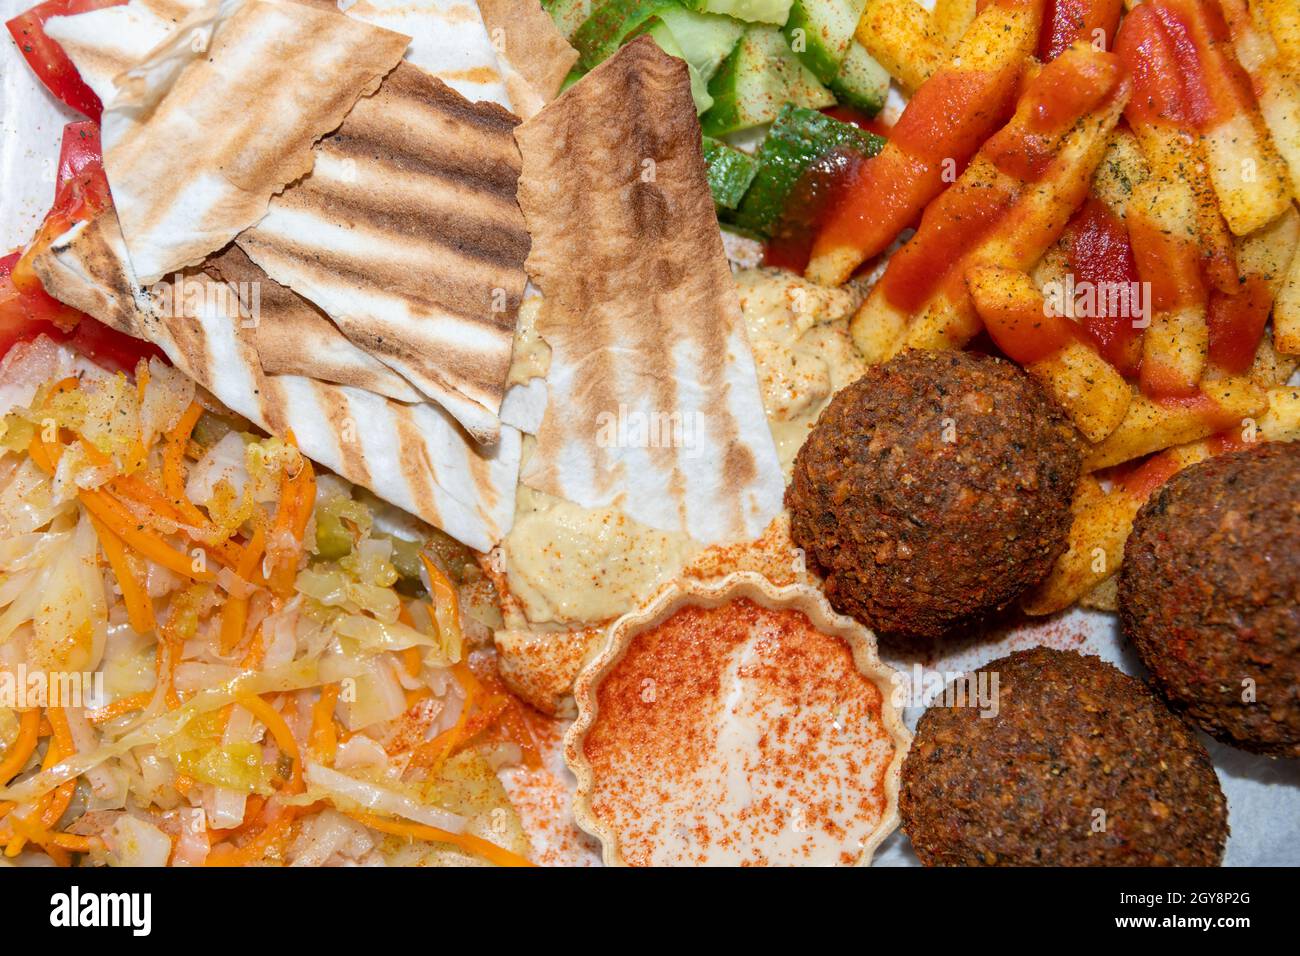 Cucina mediorientale o araba. Primo piano di falafel, hummus, tabbouleh, pita pane e verdure, vista dall'alto. Tacos vegani. Cibo sano vegetariano. Foto Stock